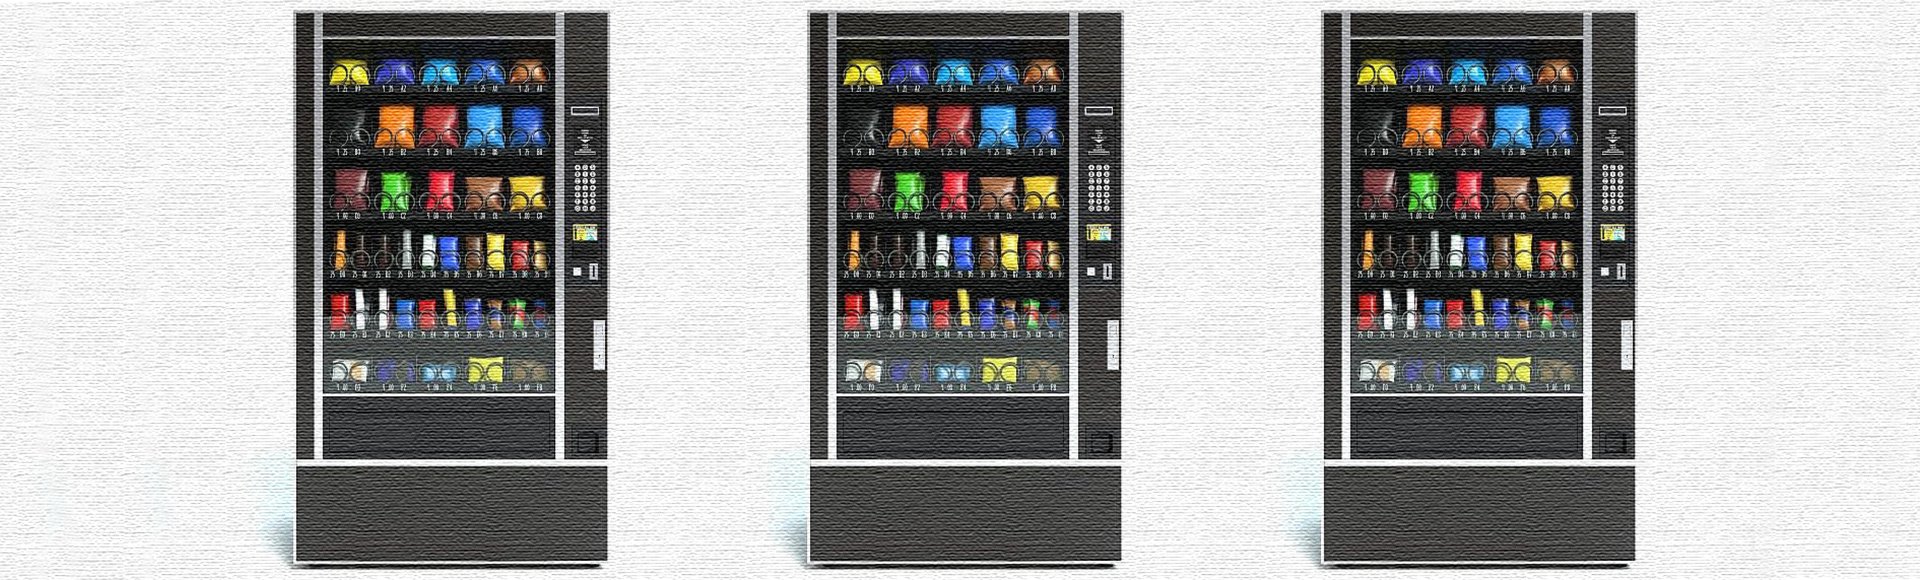 vending machine updated